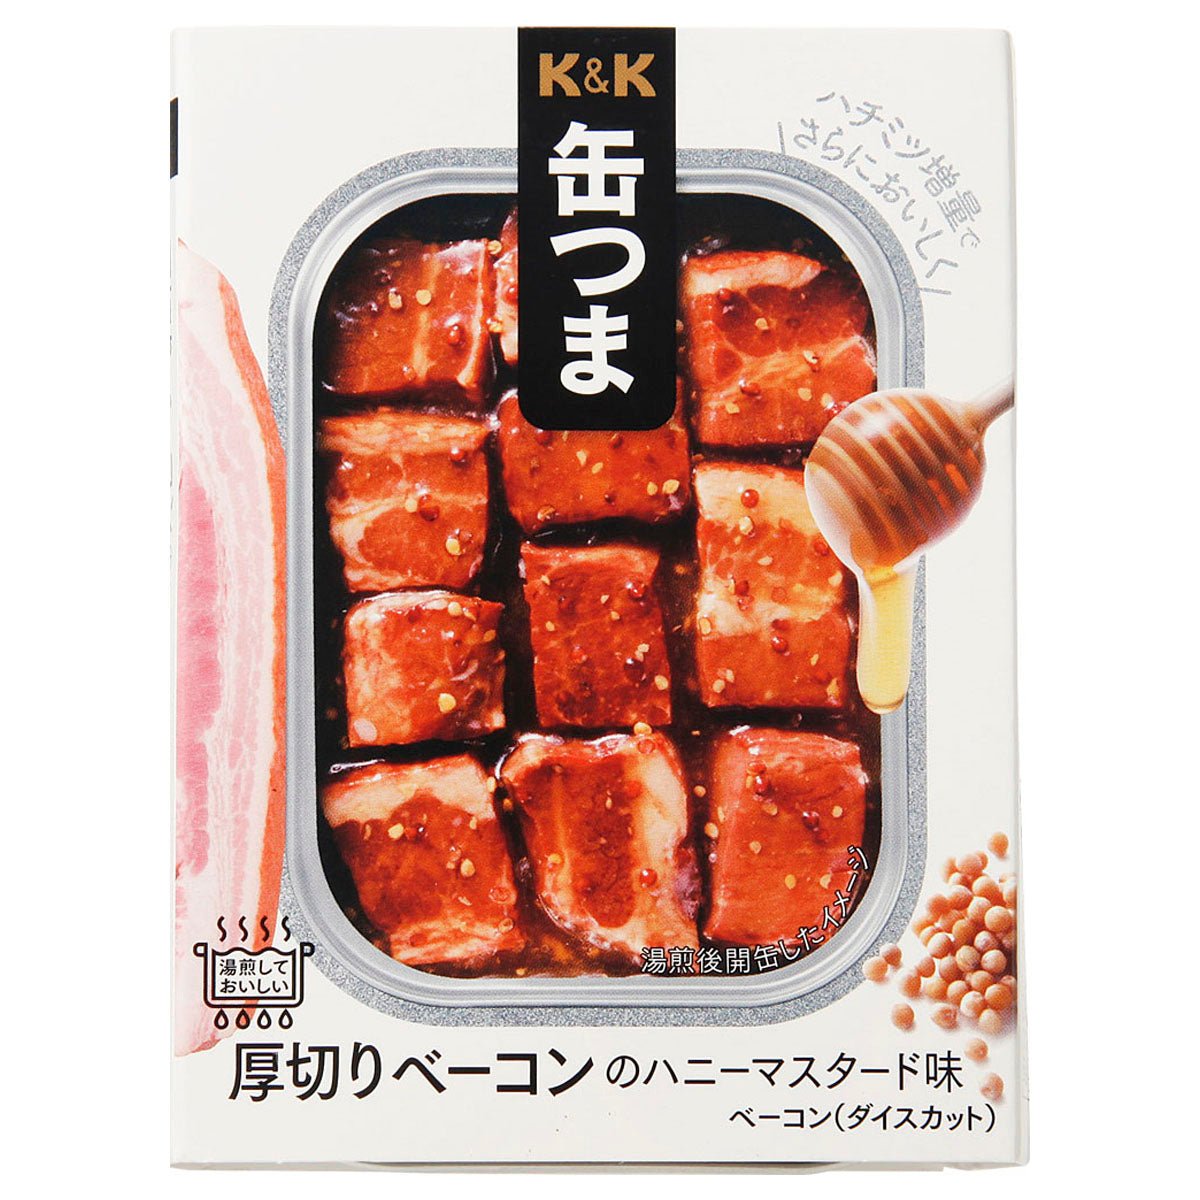 K&K latas de espesor de tocino en rodajas de miel de mostaza